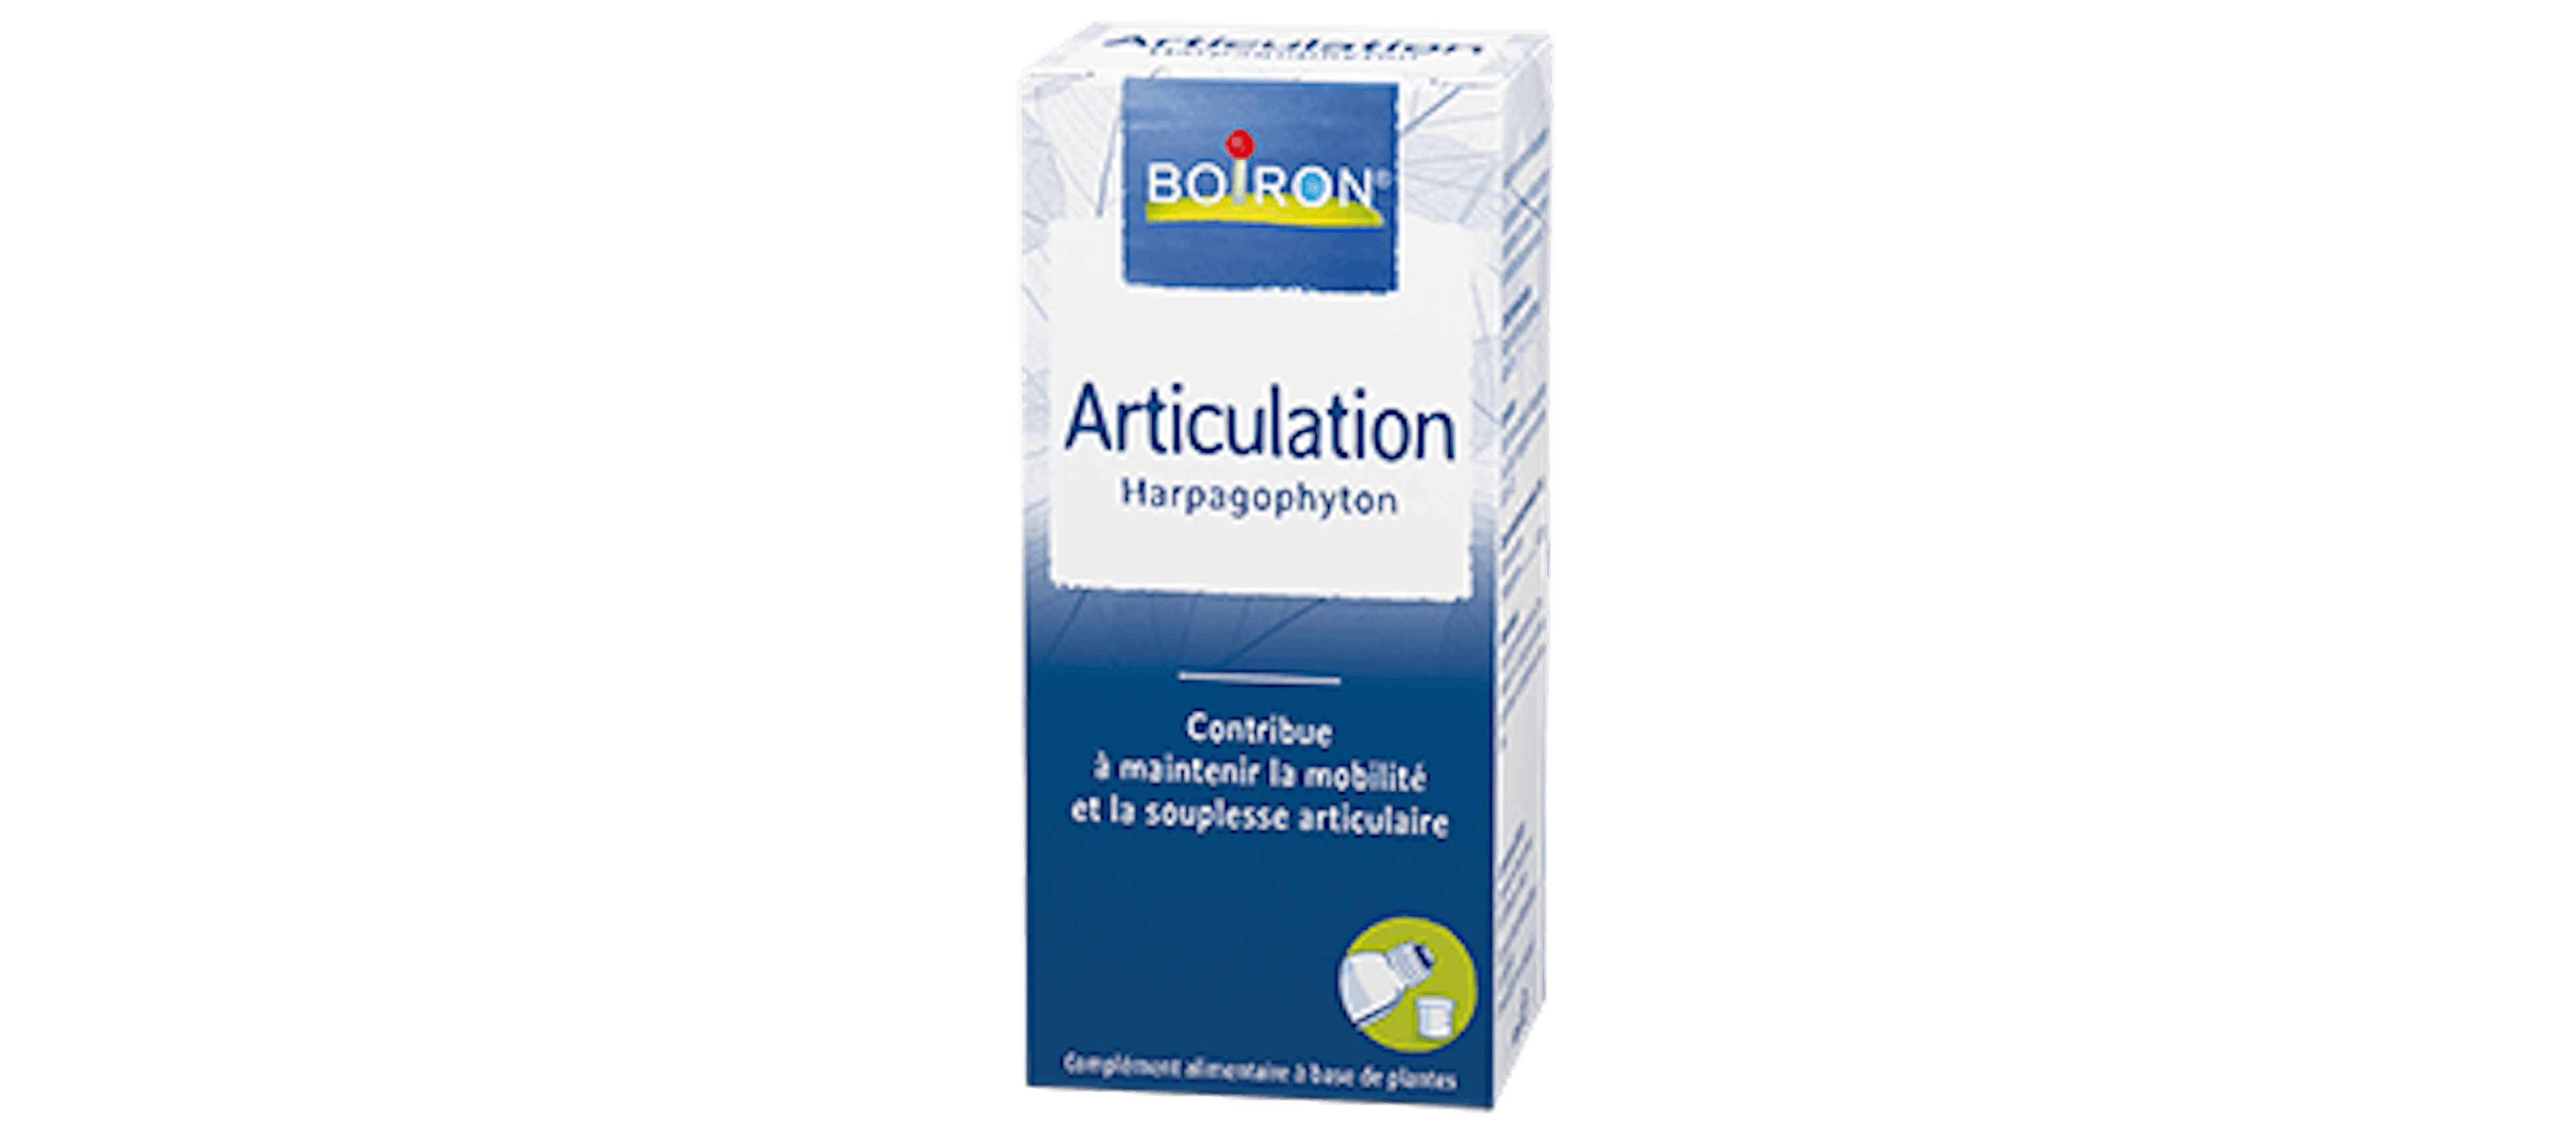 Harpagophyton - Maintenir mobilité et souplesse articulaire - Les extraits de plantes Boiron 